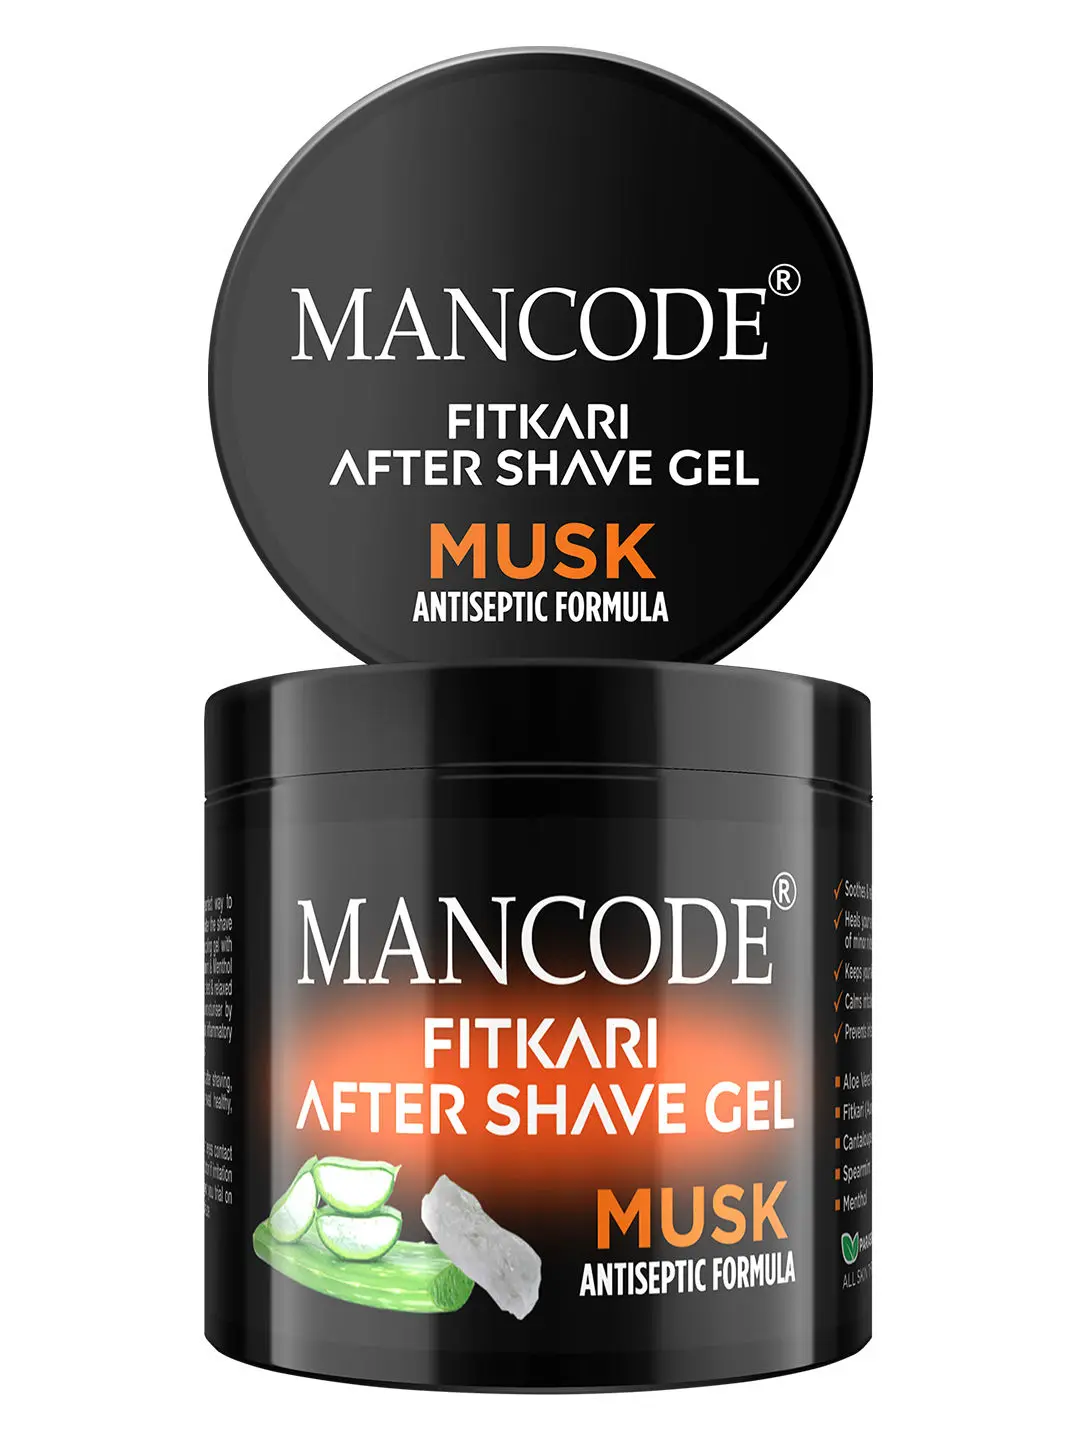 Mancode Fitkari After Shave Gel for Men Musk Antiseptic Formula (100 g)